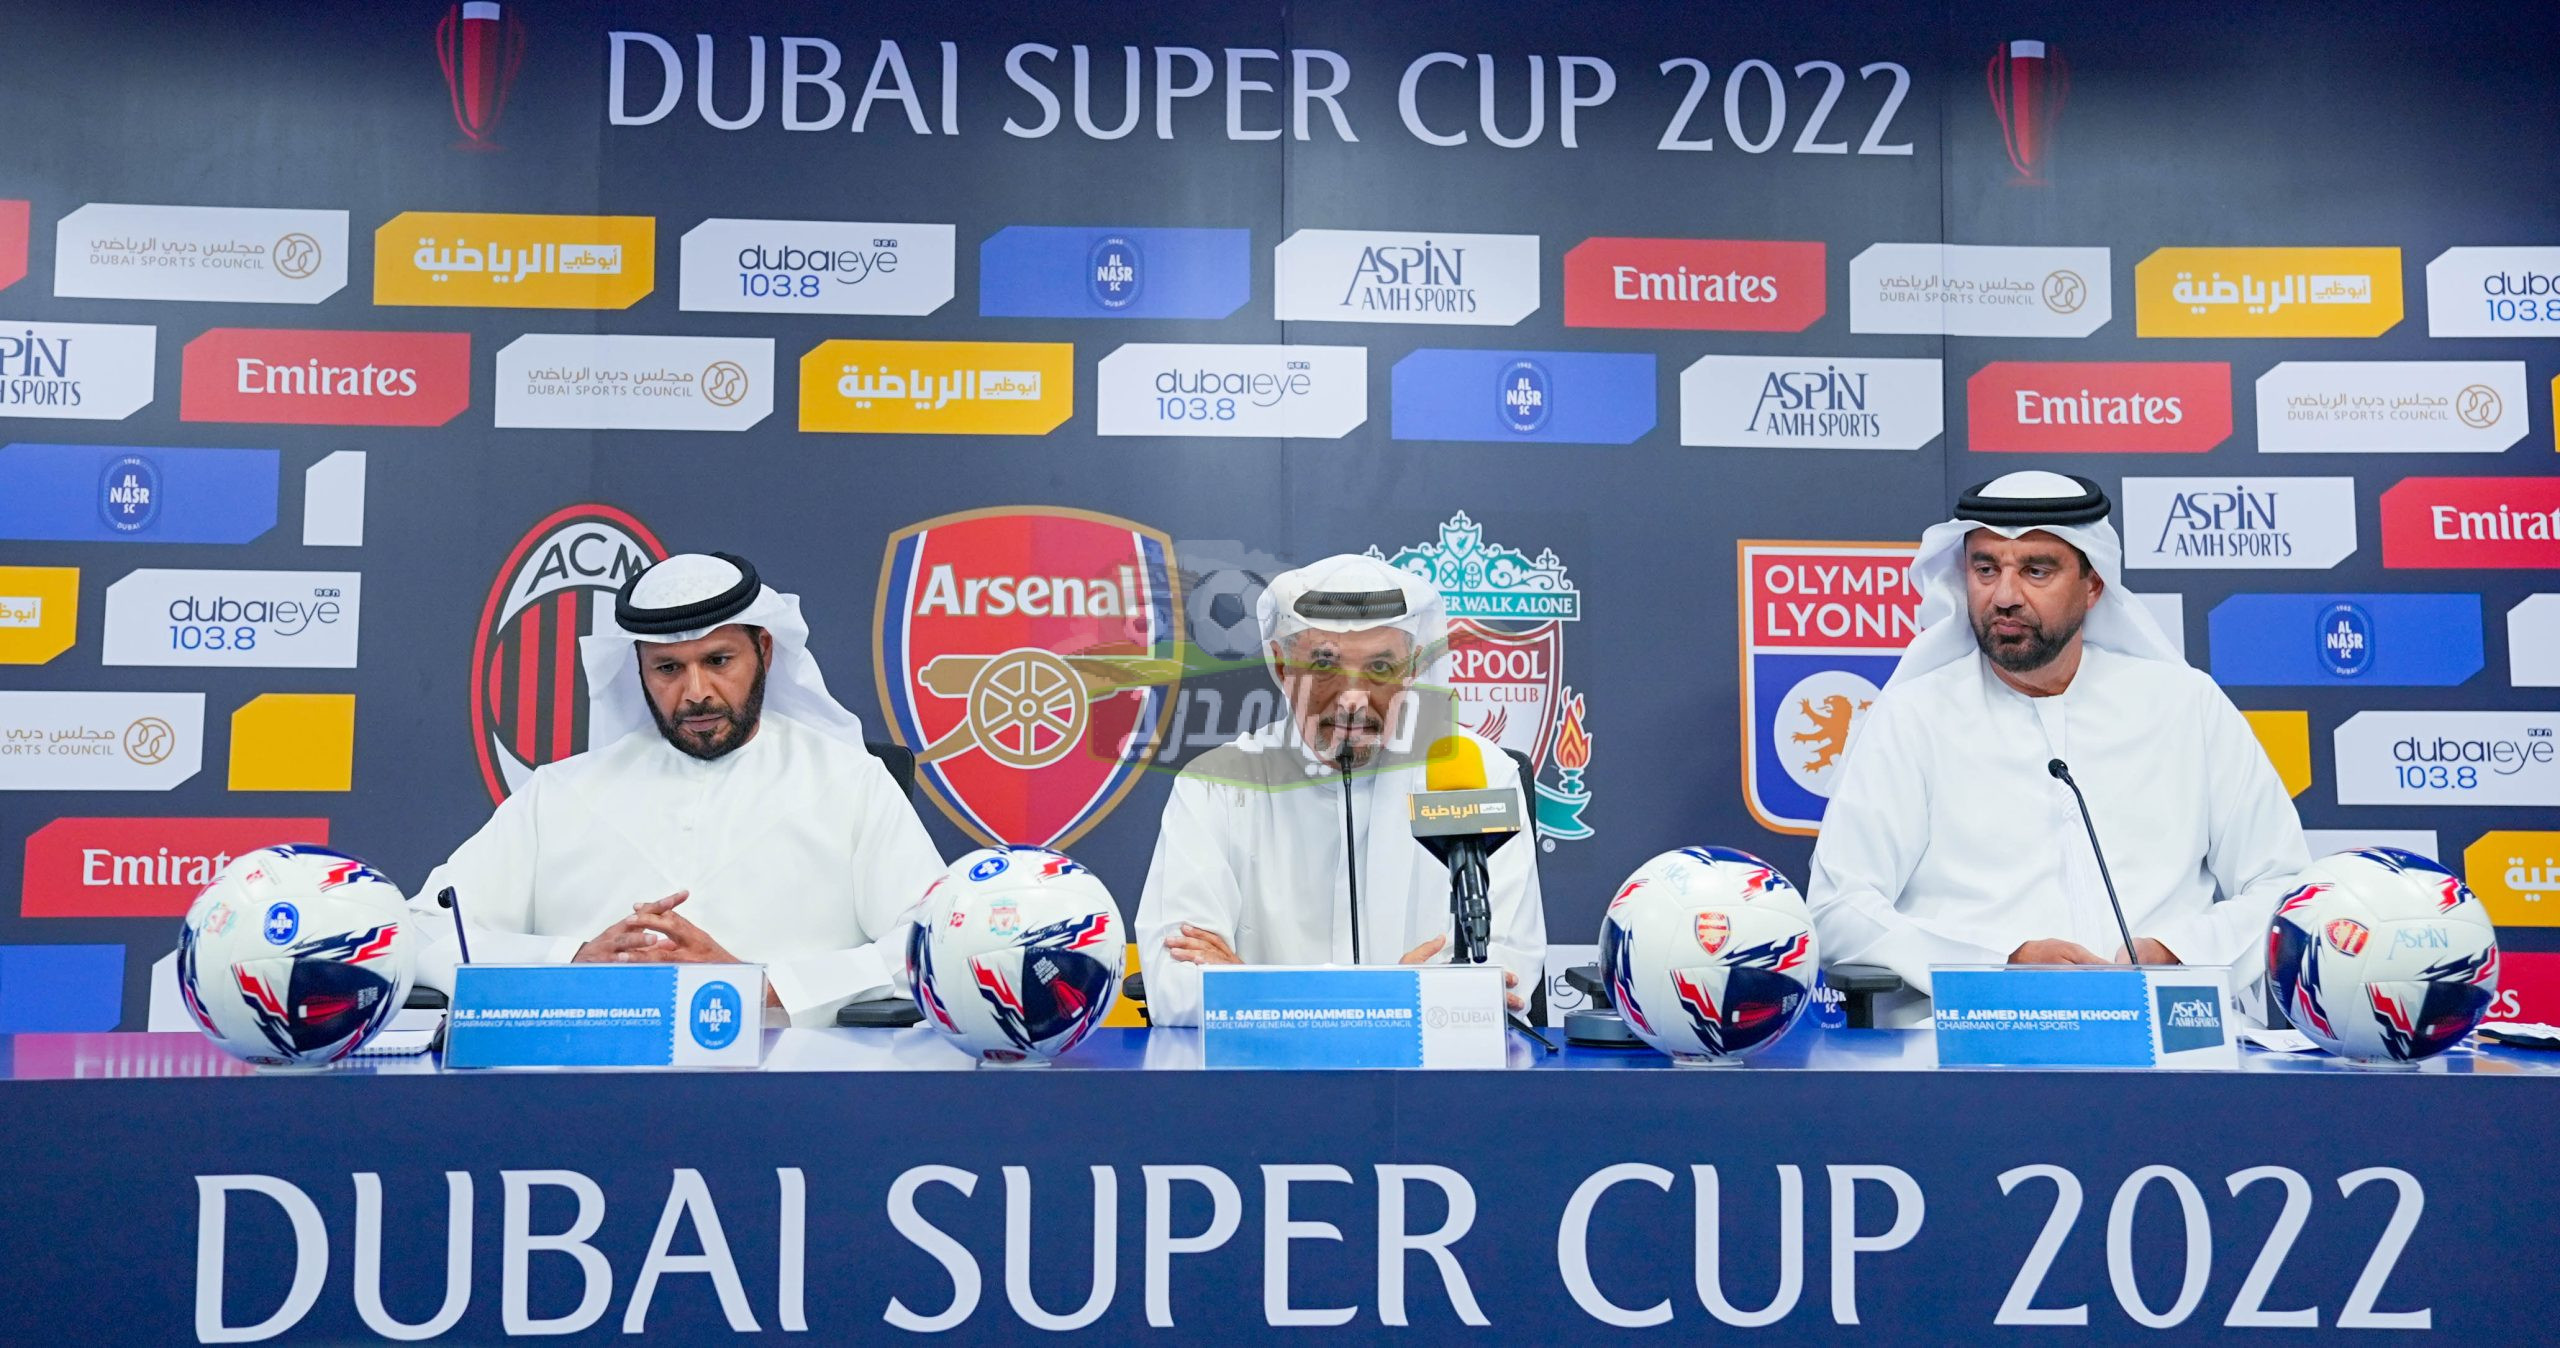 القنوات الناقلة لمباريات كأس سوبر دبي 2022 Dubai Super Cup على النايل سات